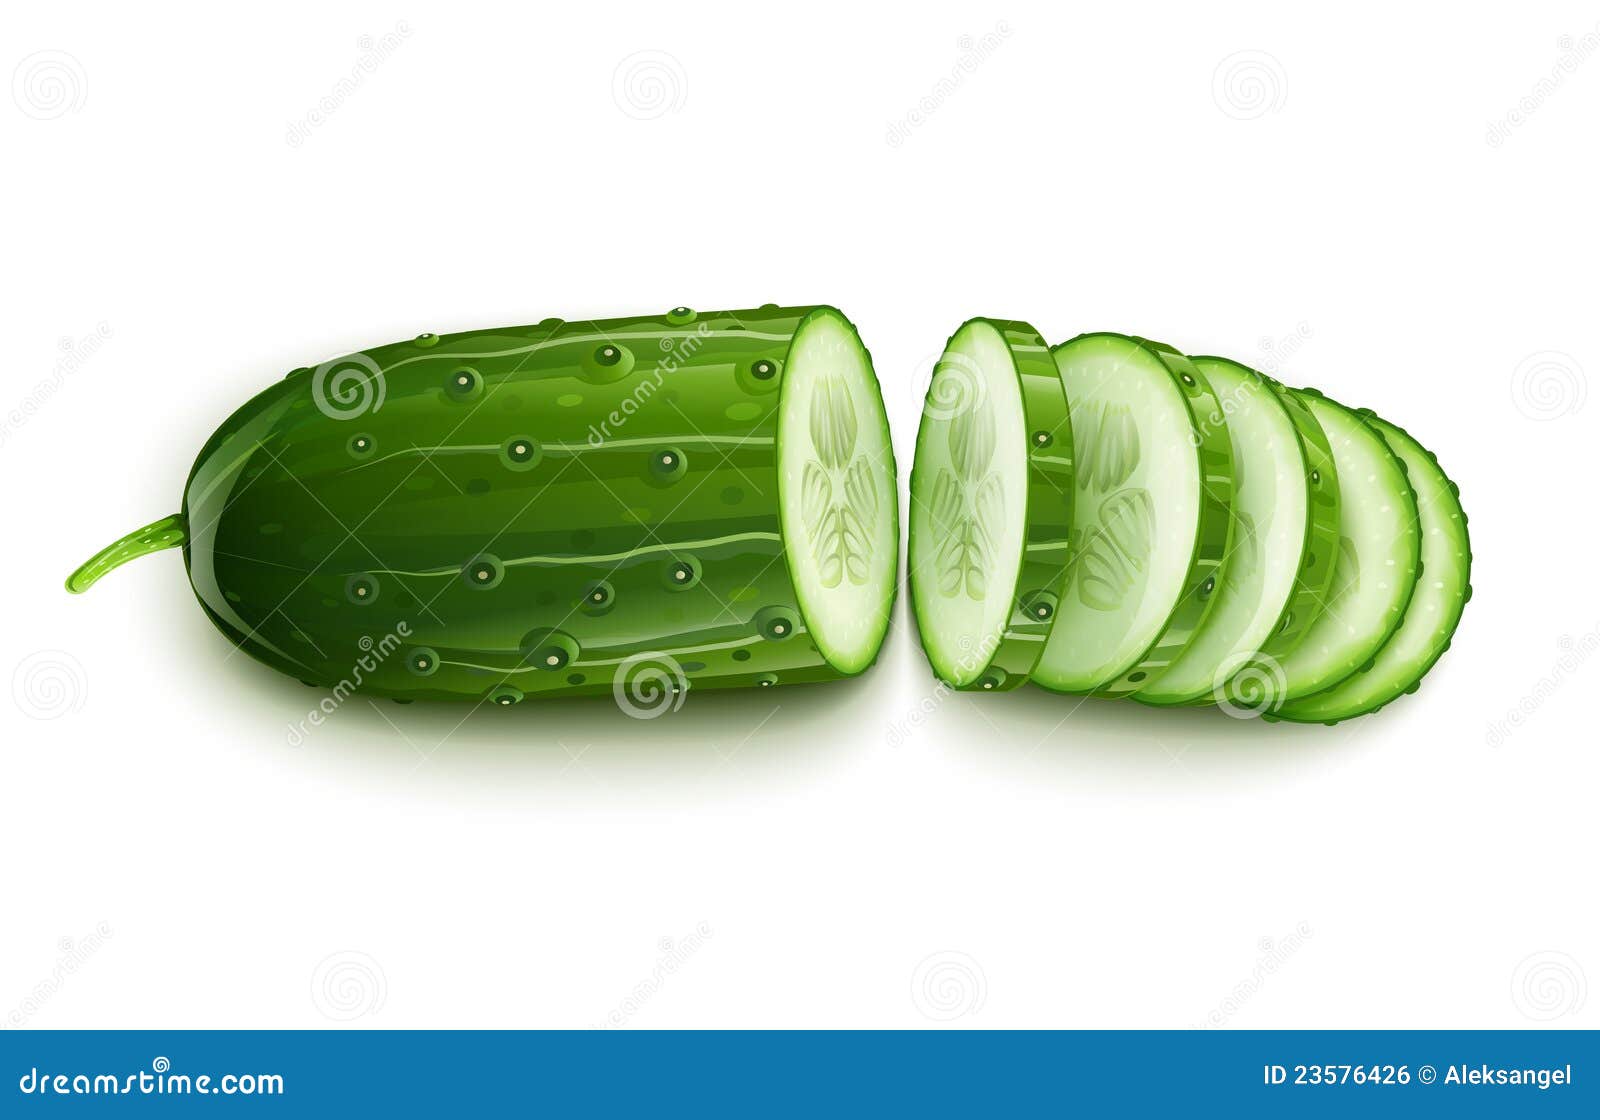 ripe cucumber cut segment